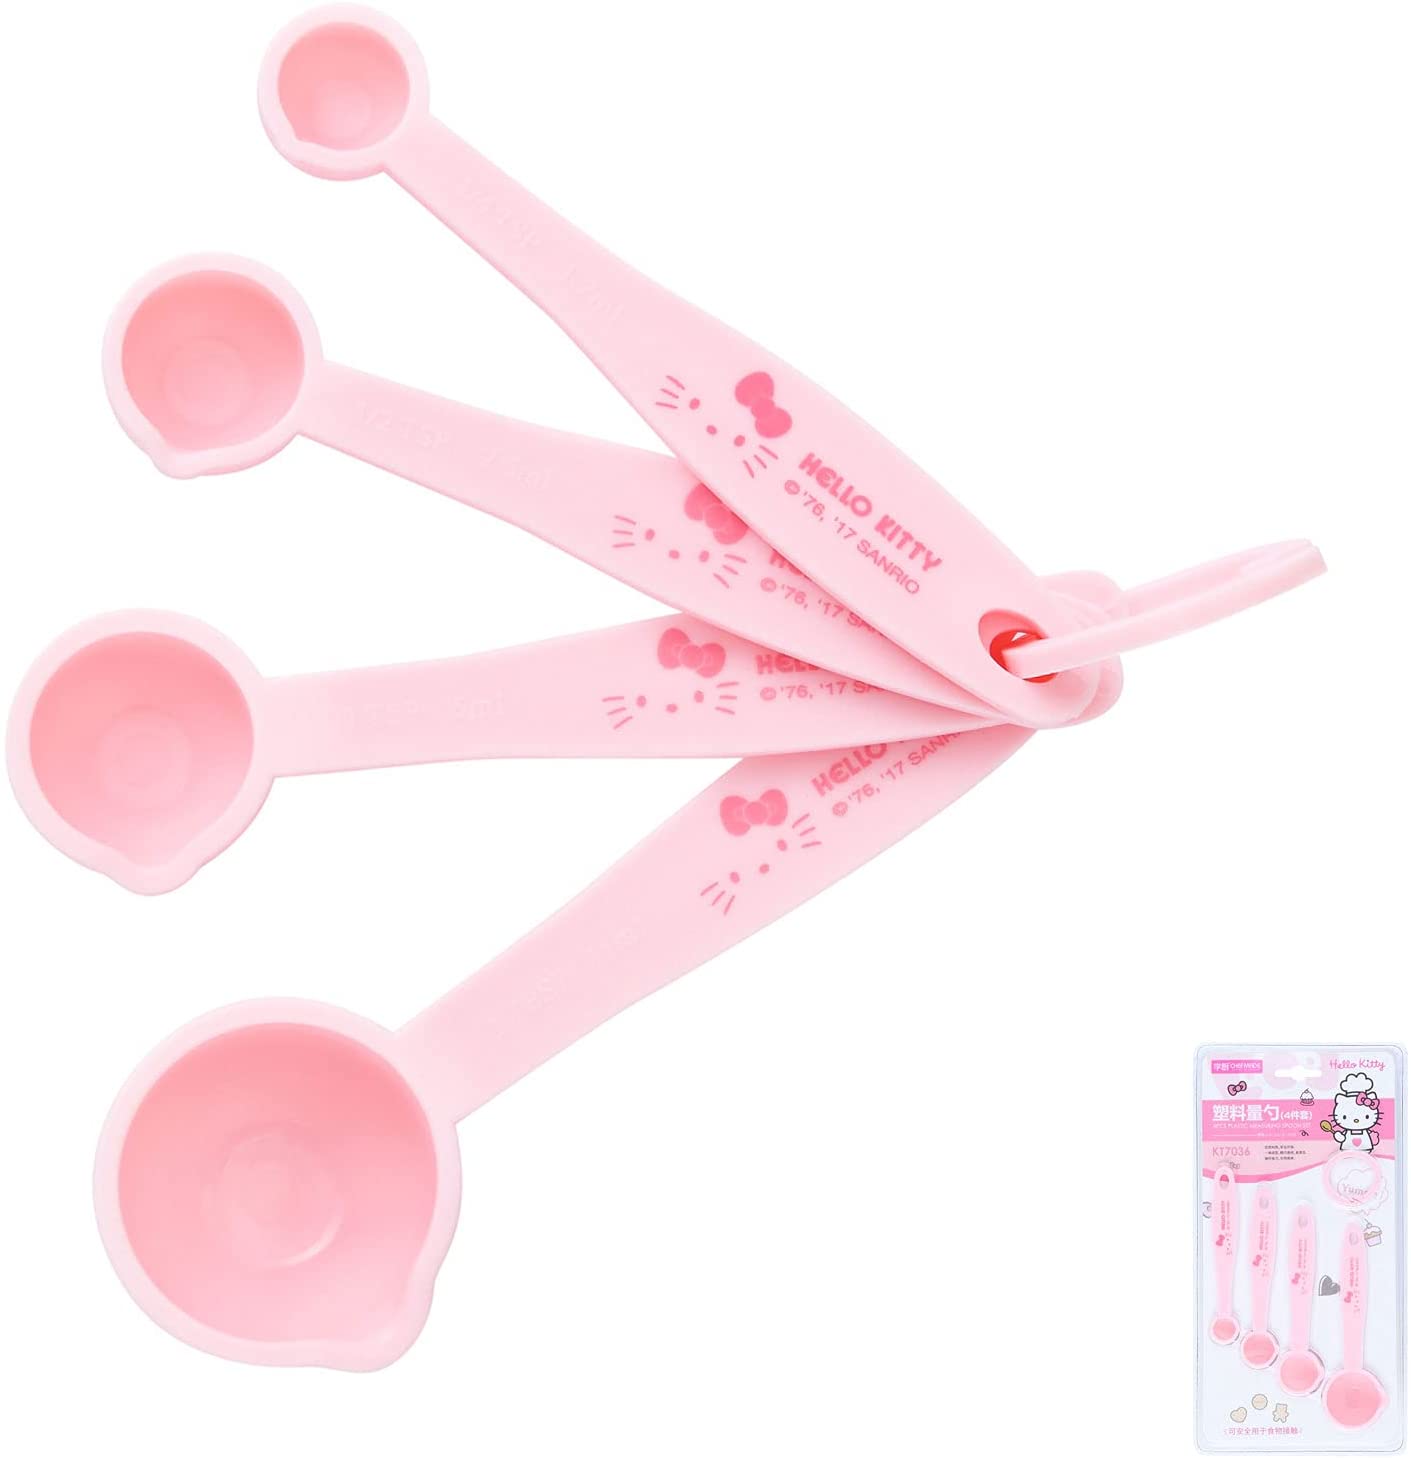 Chefmade學廚KT7036 Kitty量匙4件套Hello Kitty Measuring Spoons Set